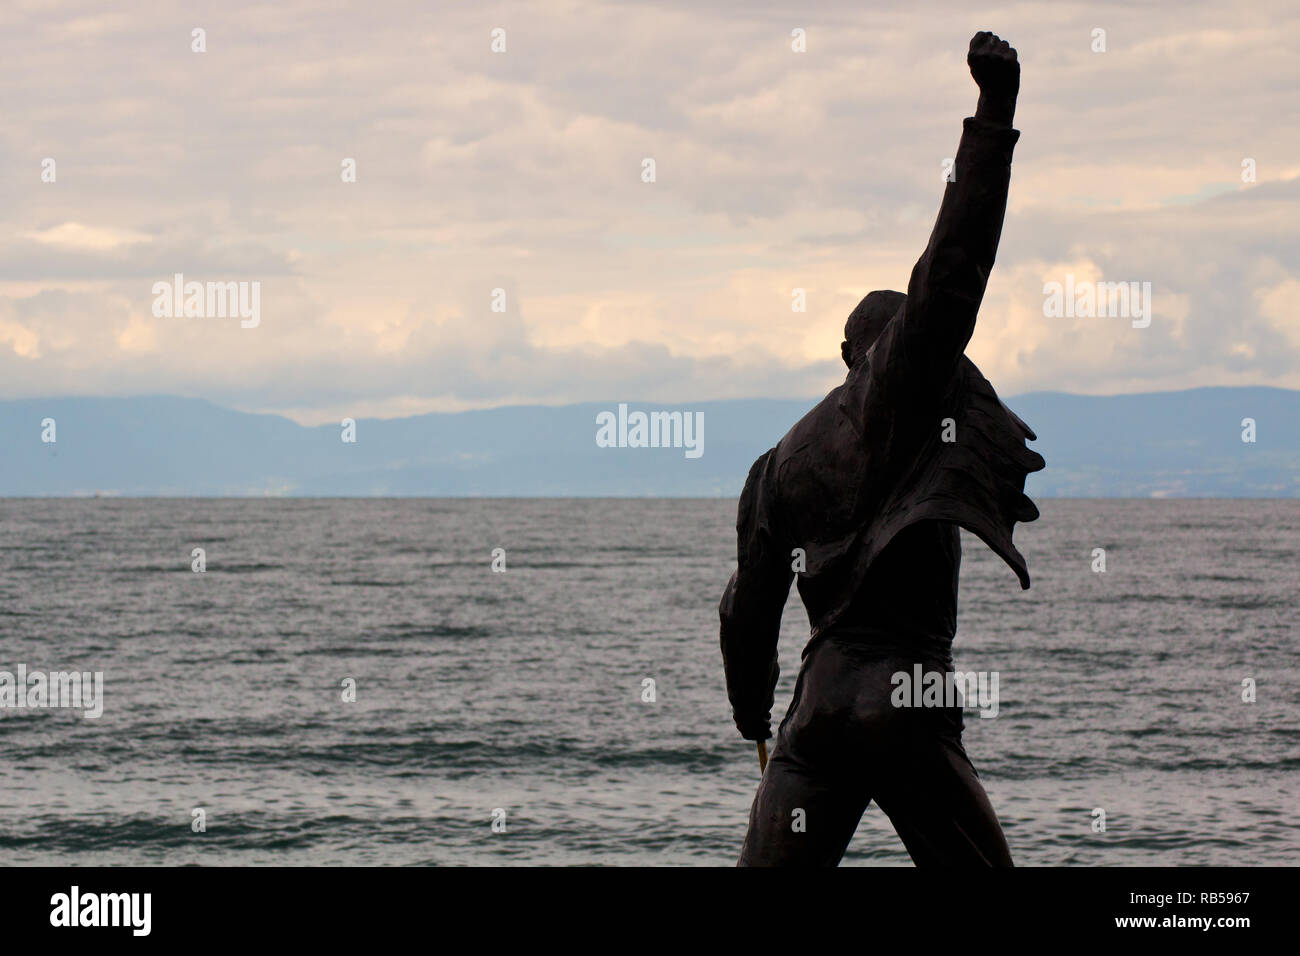 La statue de Freddie Mercury (par Irena Sedlecká) - Montreux - Lac de Genève - Suisse Banque D'Images